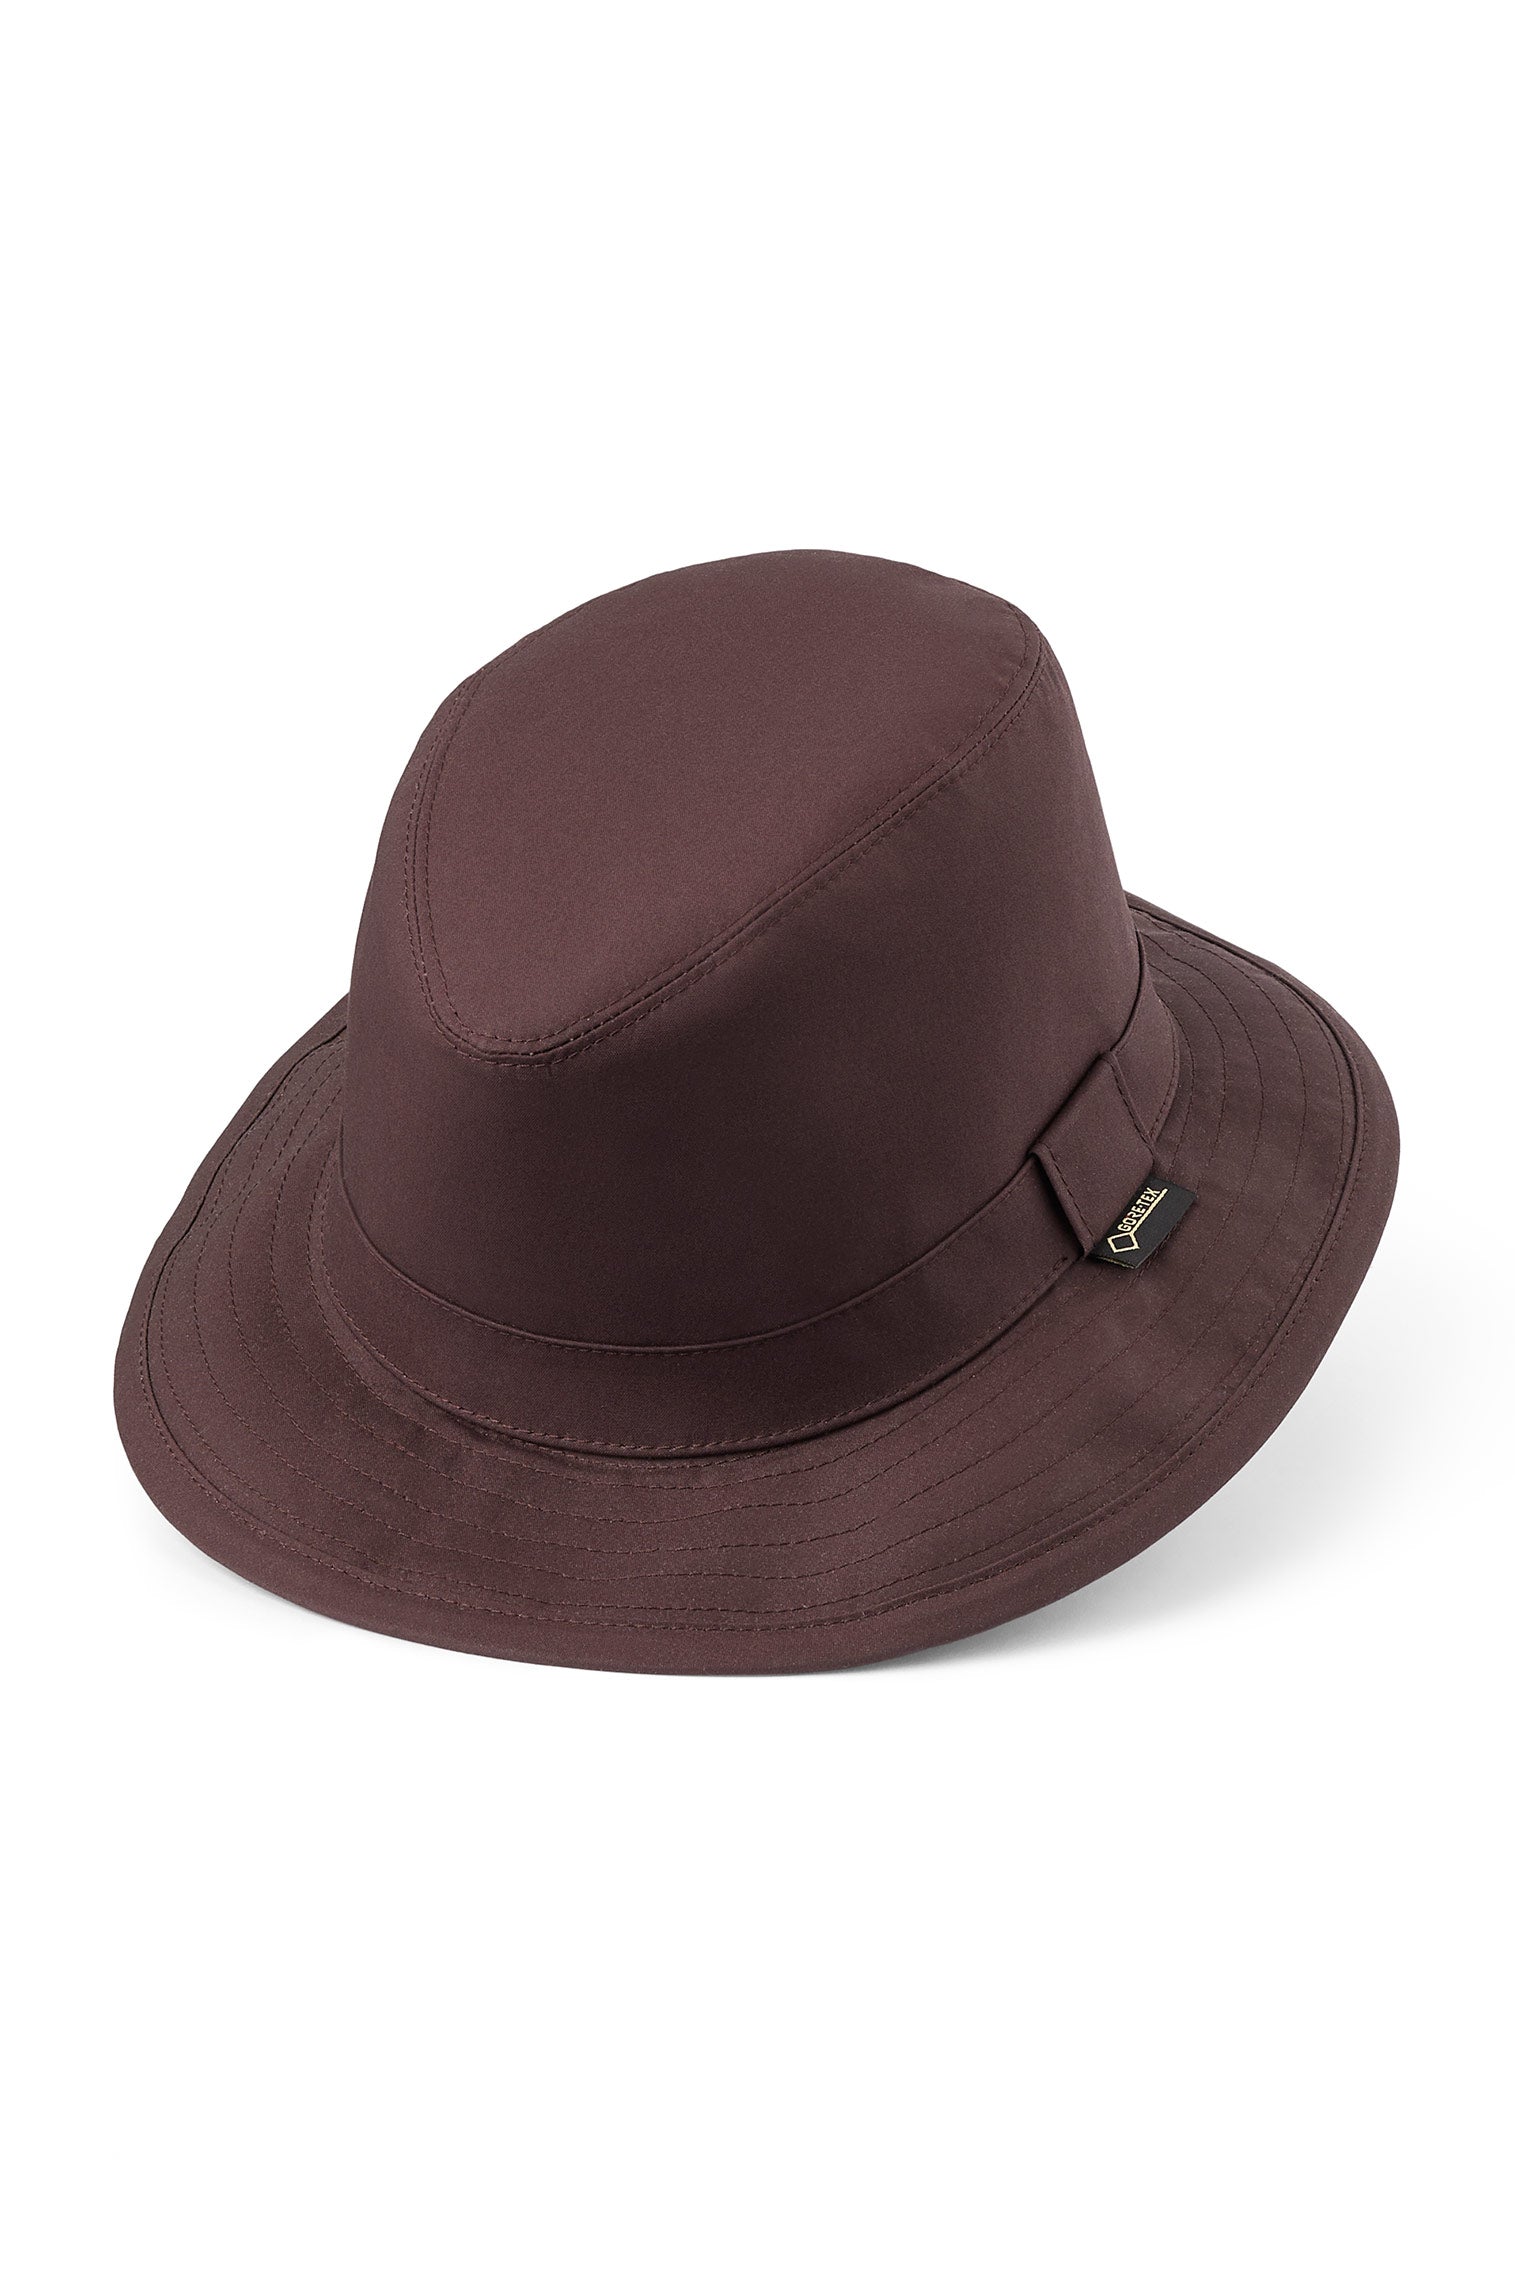 Tay GORE-TEX Hat - Men’s Bucket Hats - Lock & Co. Hatters London UK